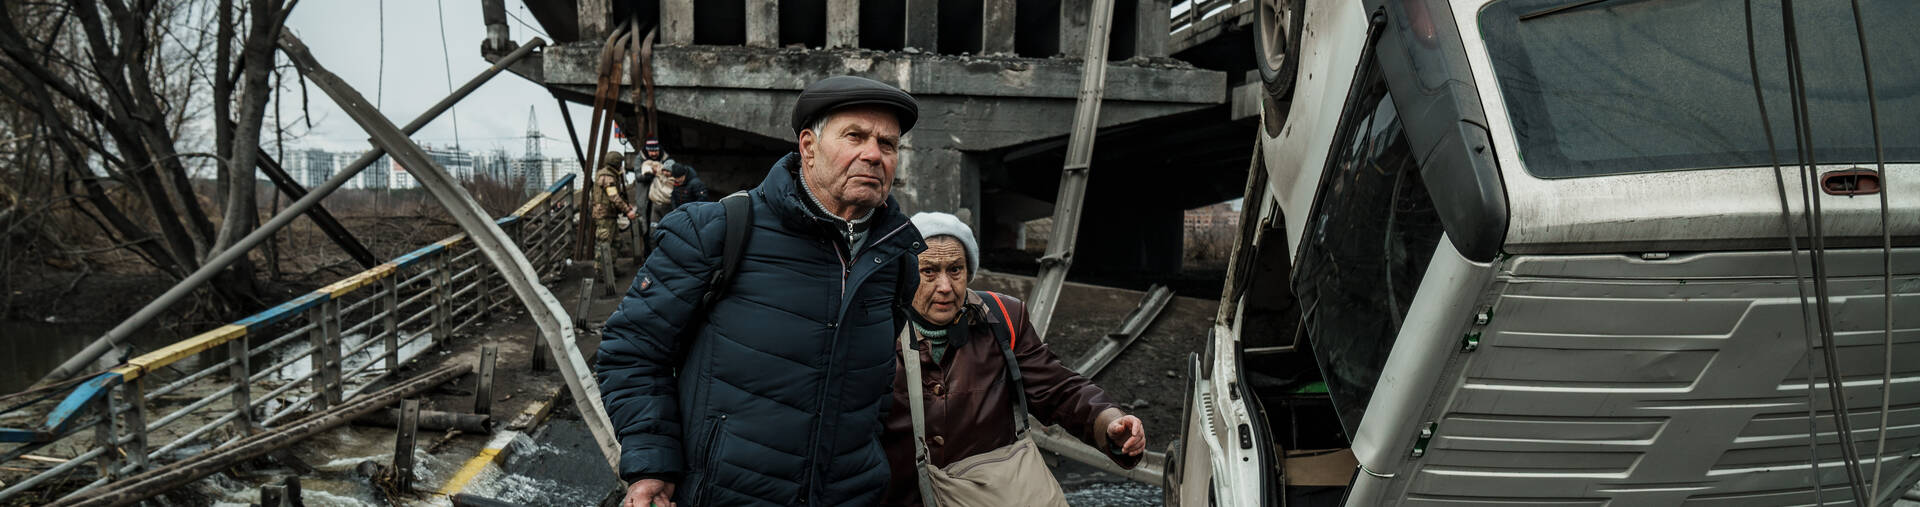 Ein älteres Ehepaar flüchtet durch die Trümmer in Irpin in der Ukraine.